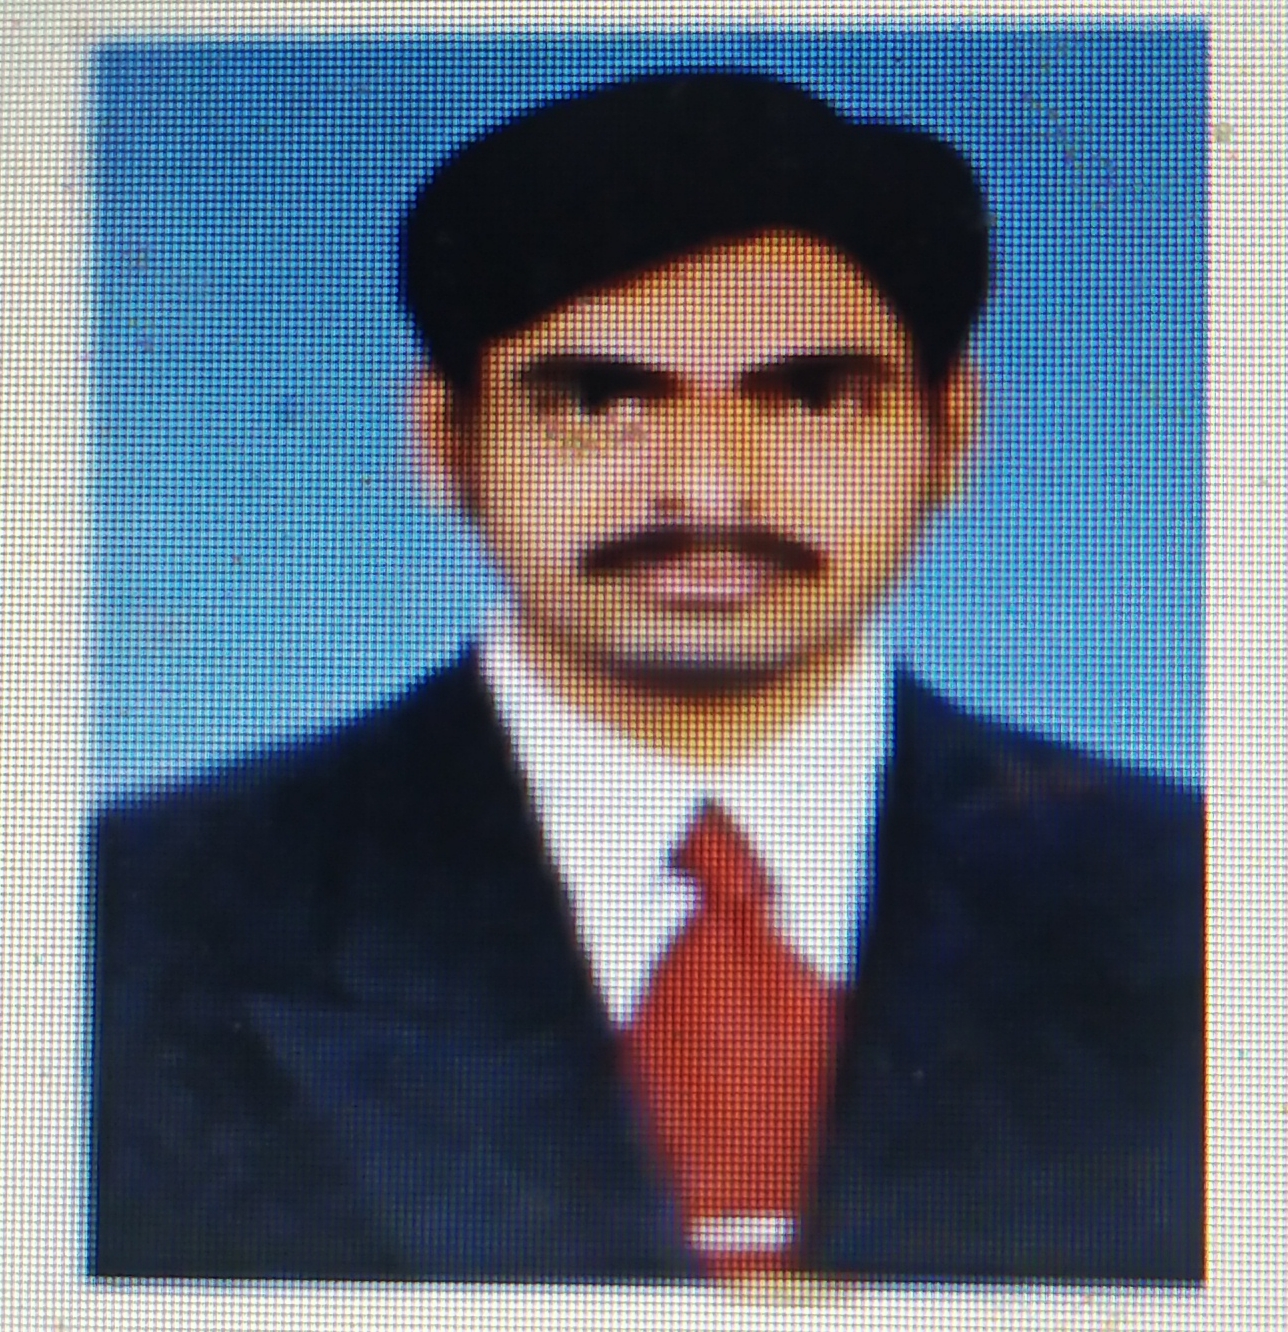 Mr. Santosh Raikar